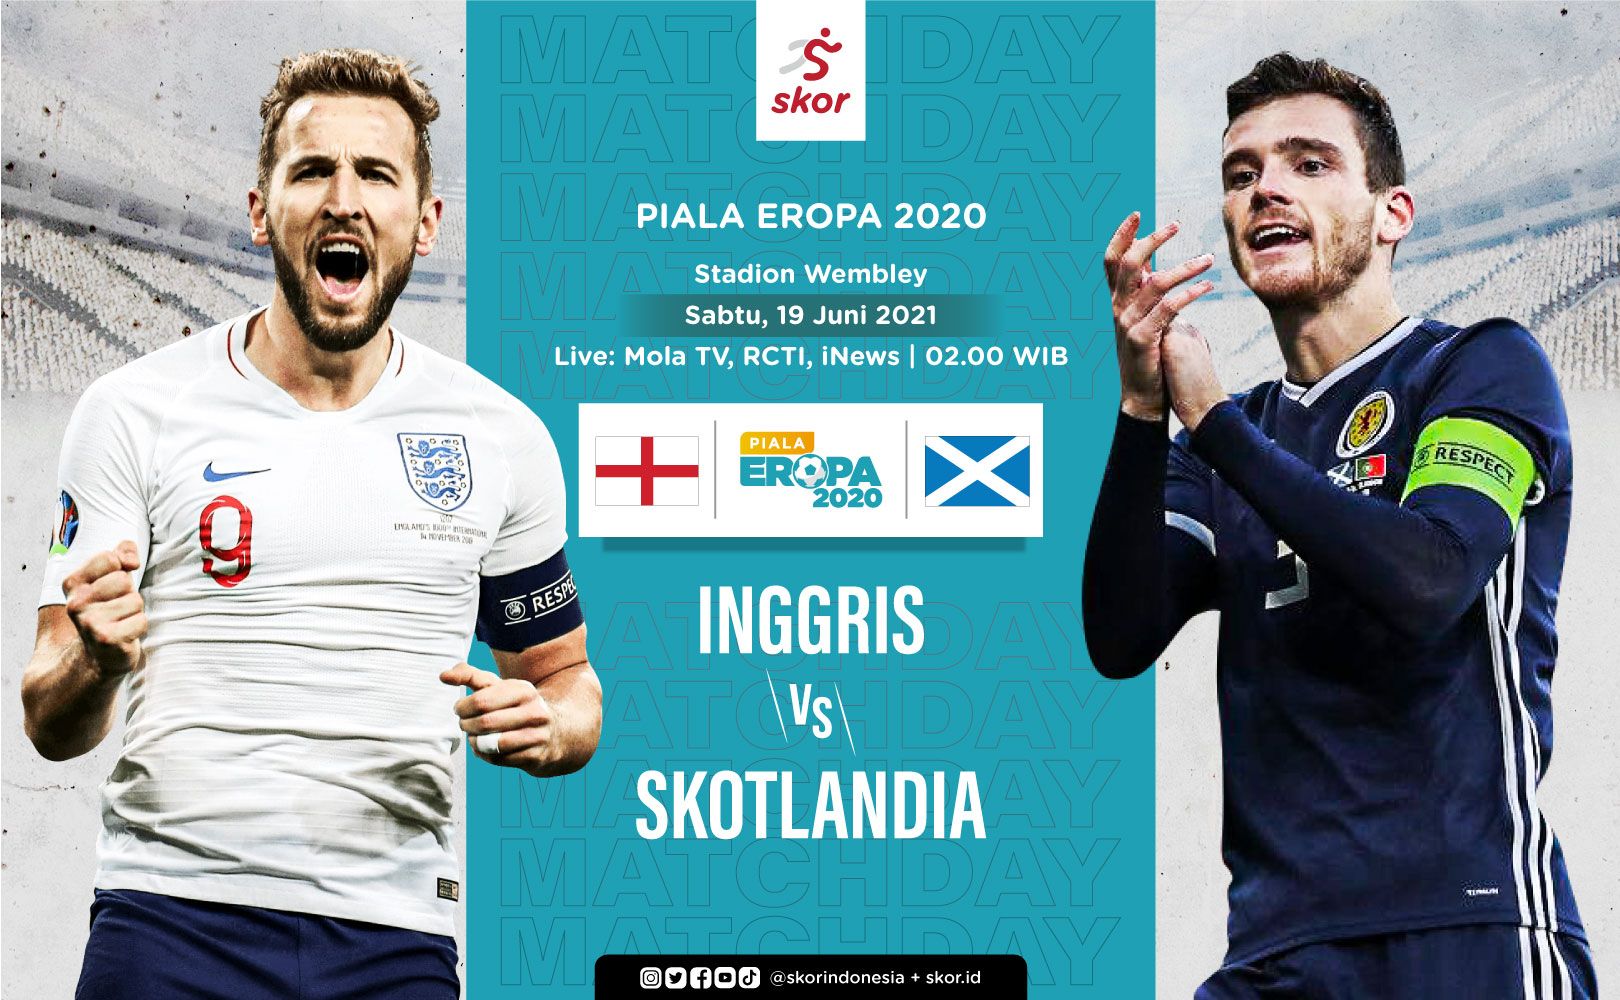 Skor inggris vs skotlandia 2021